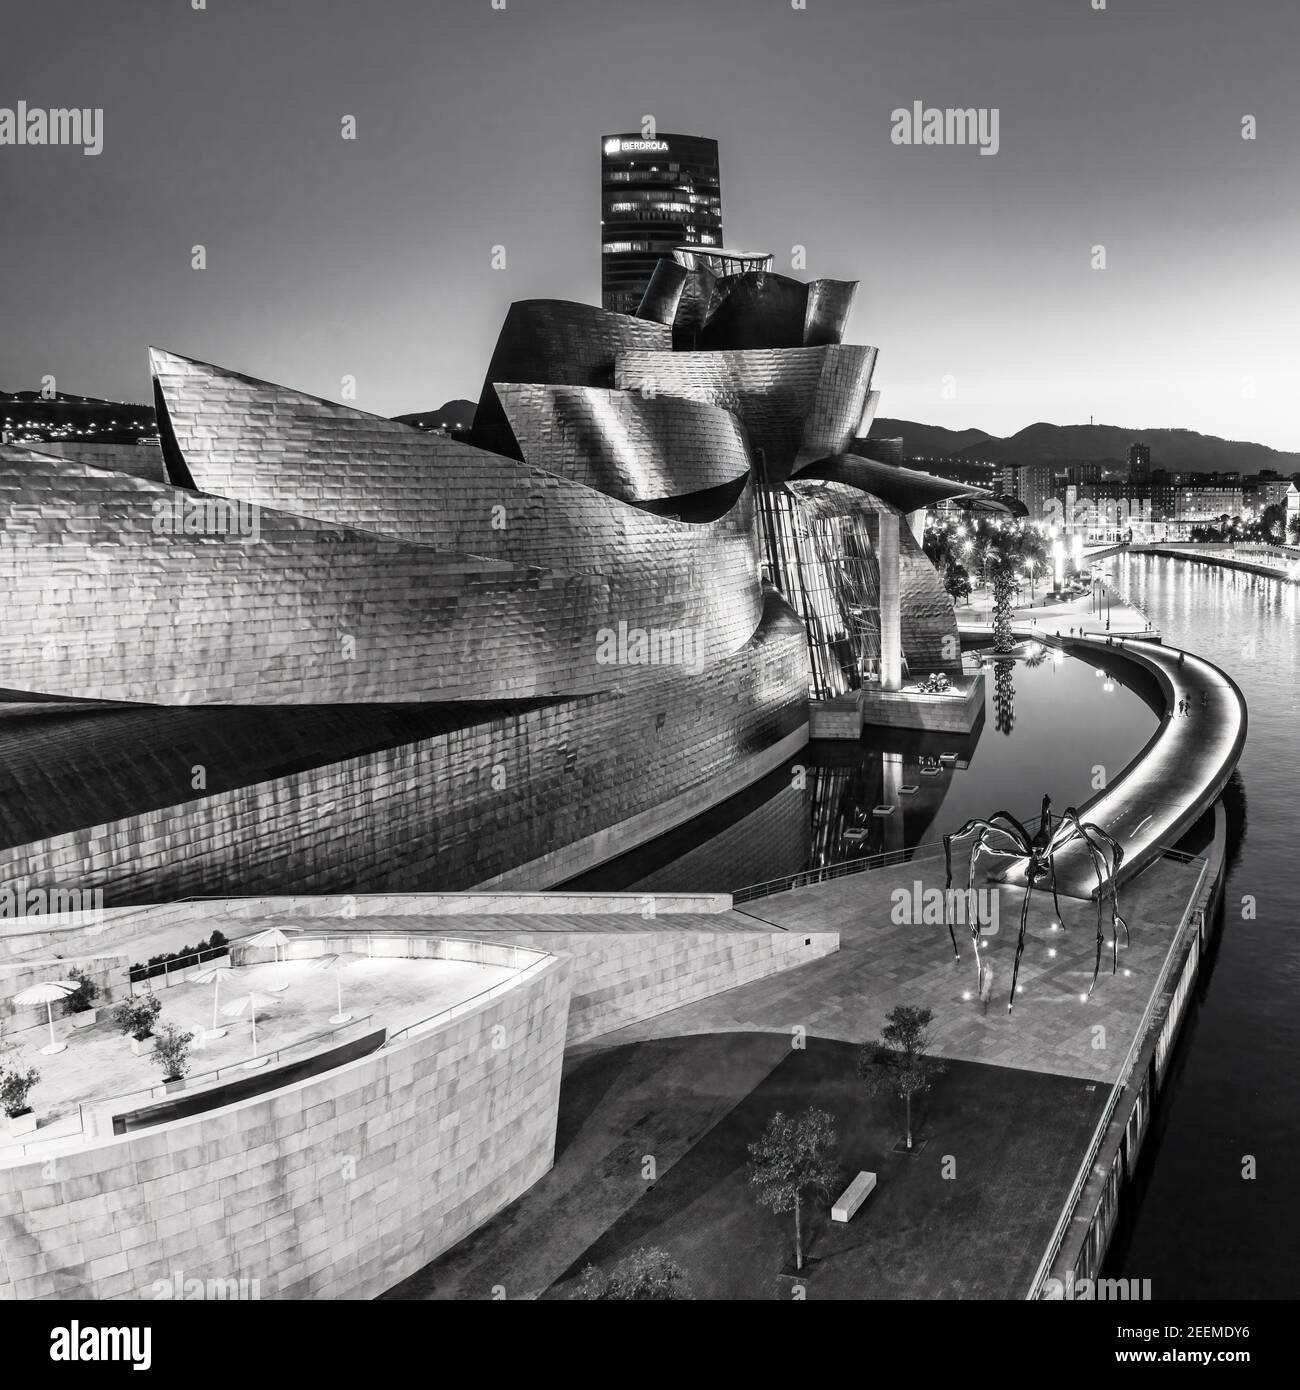 Guggenheim Museum vom Architekten Frank Gehry, Bilbao, Baskenland, Spanien (nur redaktionelle Nutzung) Stock Photo